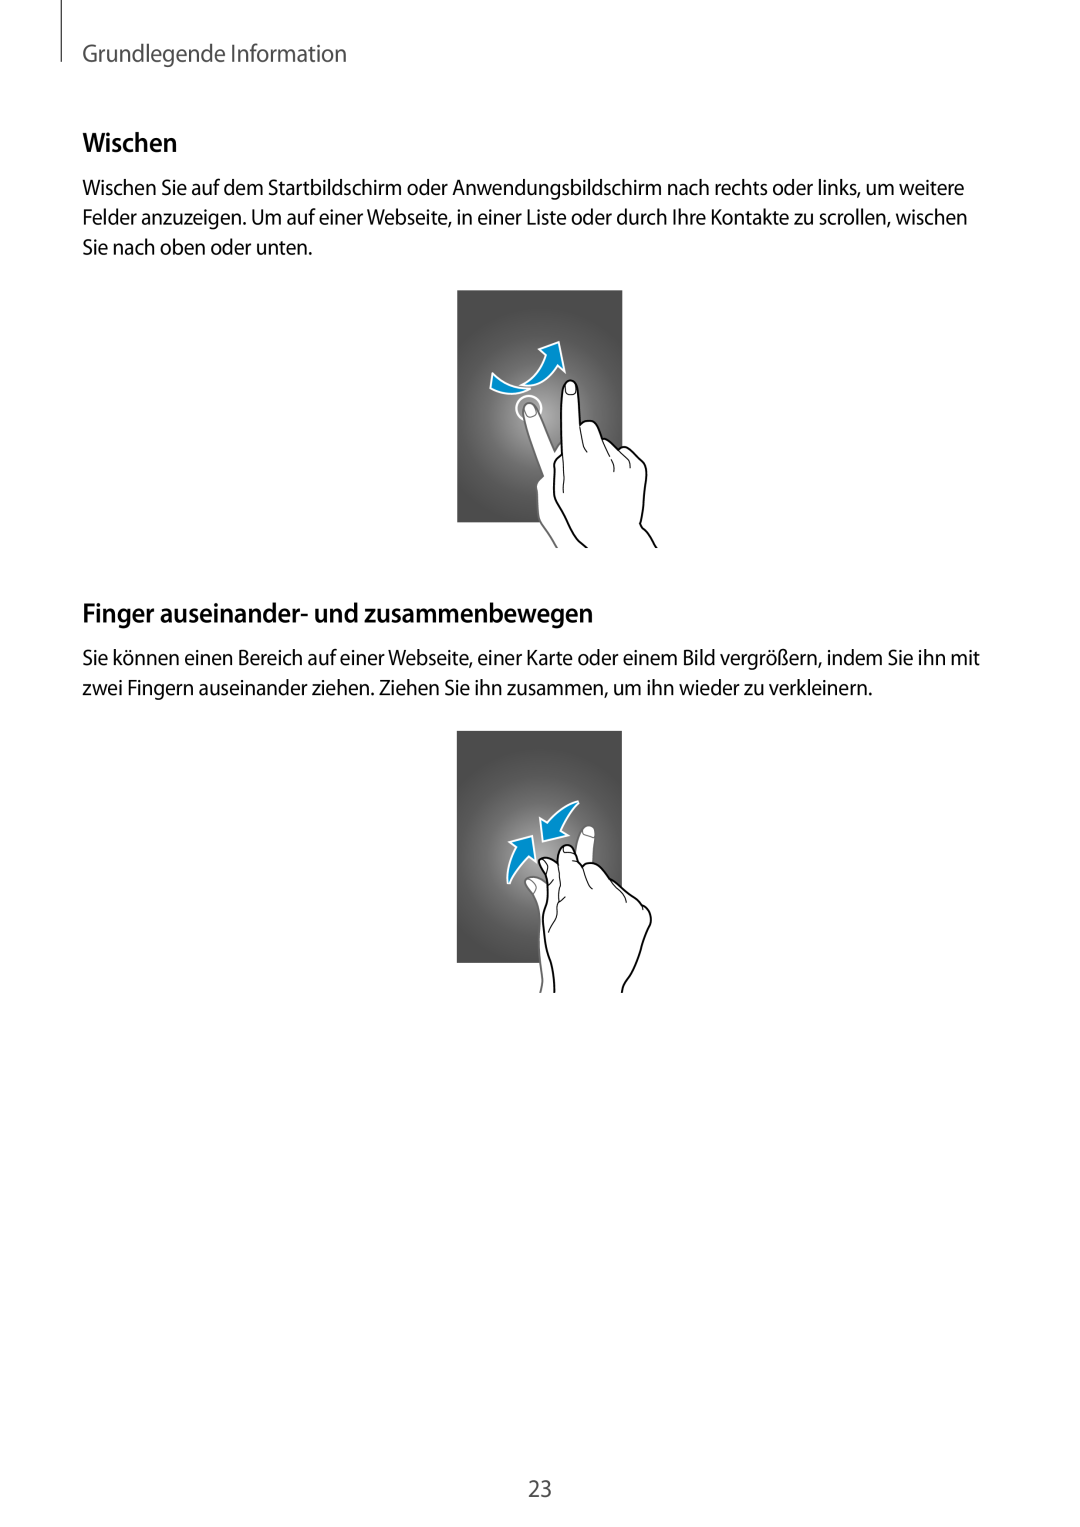 Samsung GT-I9505ZWADBT, GT-I9505ZWAEPL manual Wischen, Finger auseinander- und zusammenbewegen, Grundlegende Information 